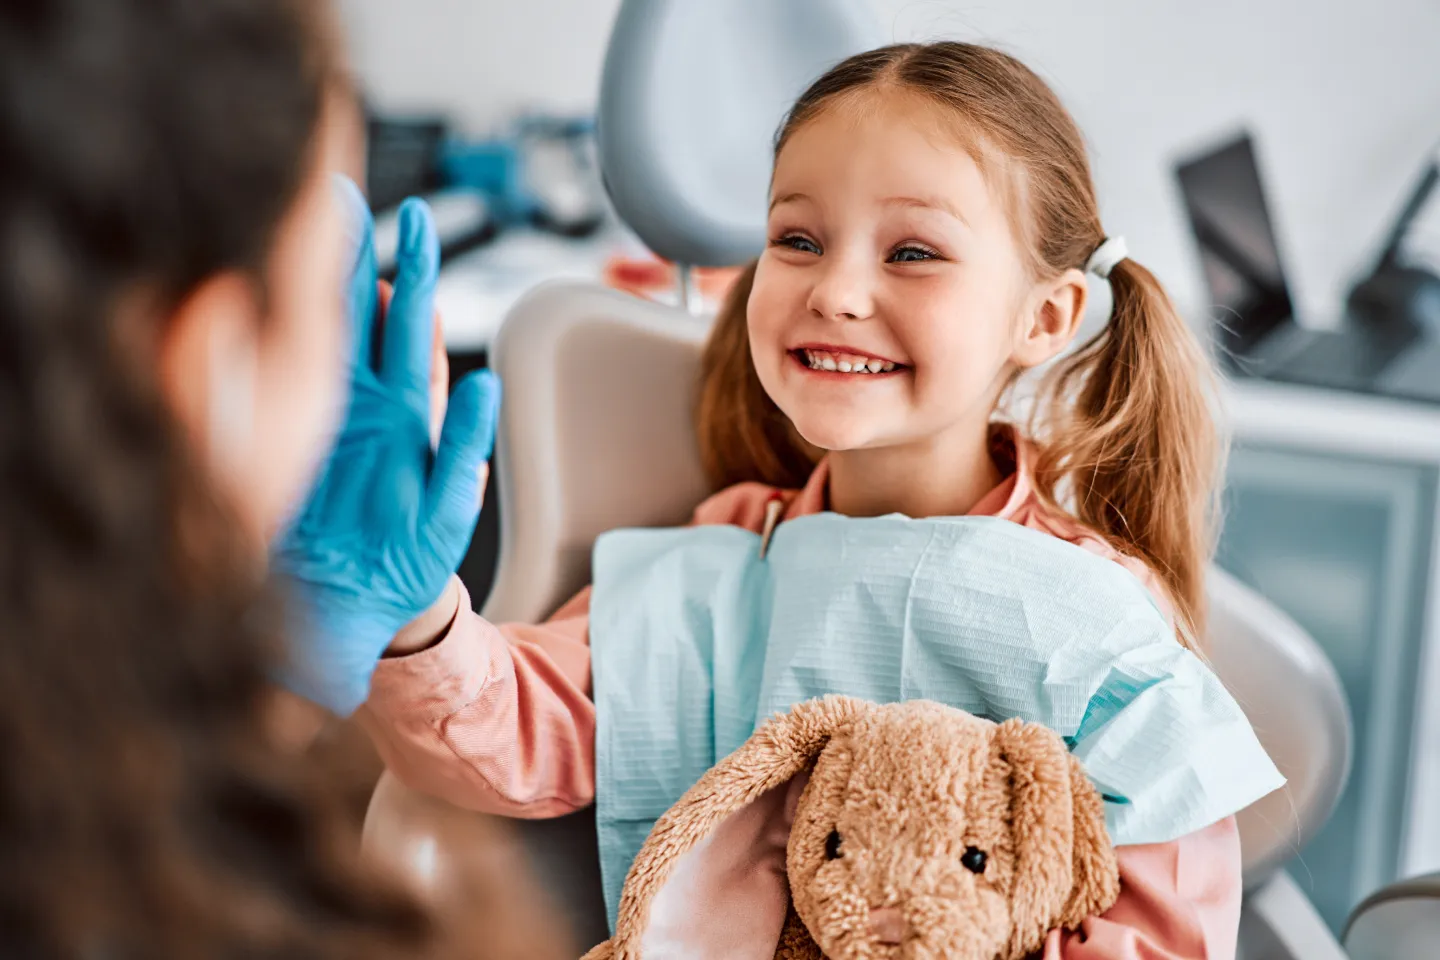 Children learning good dental hygiene habits for lifelong healthy smiles